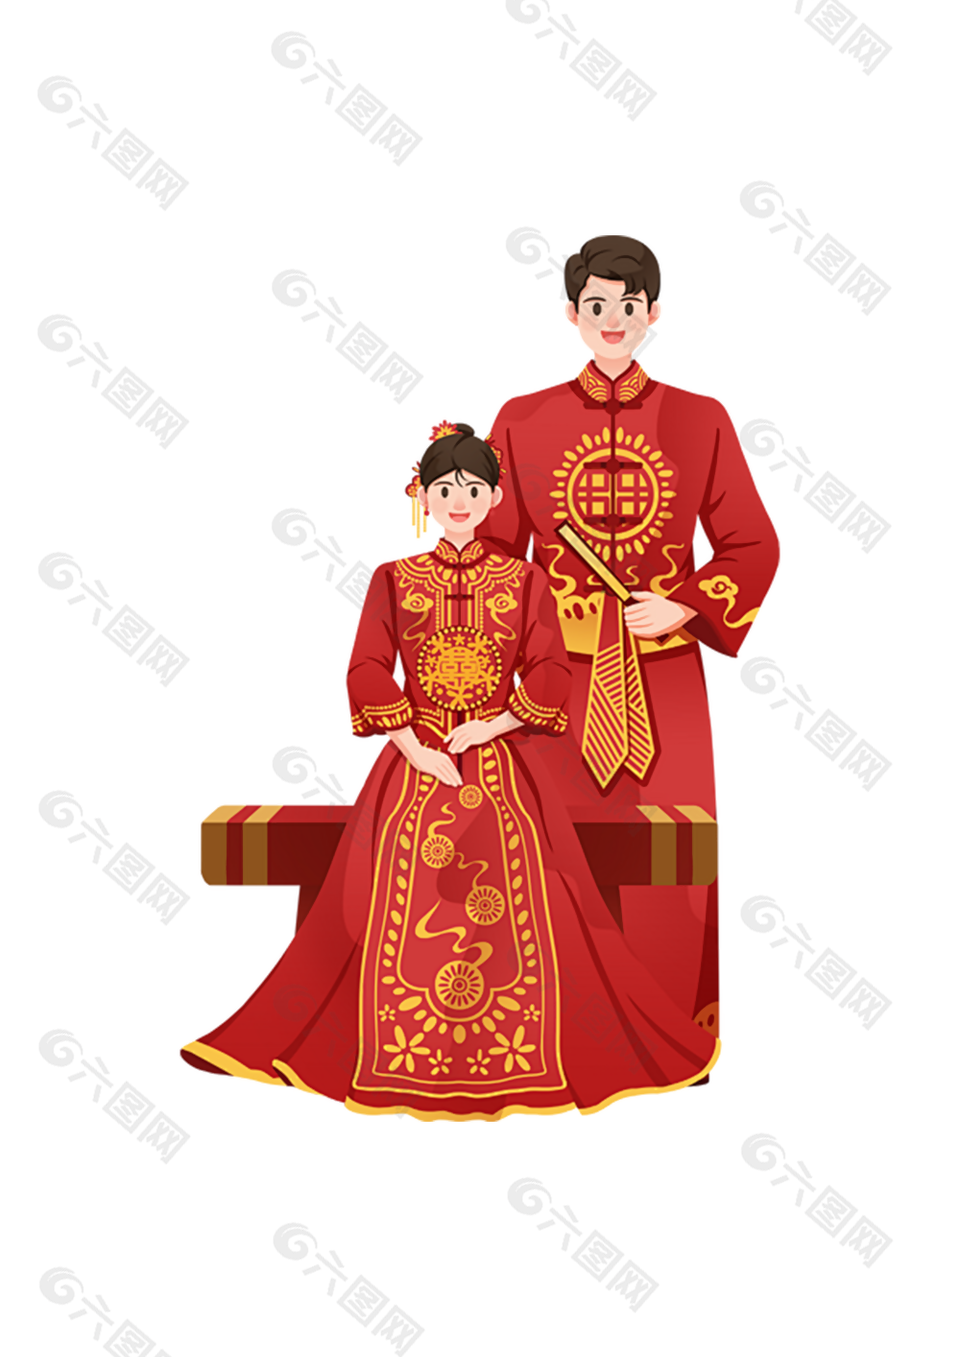 卡通手绘中式新郎新娘婚礼插画素材